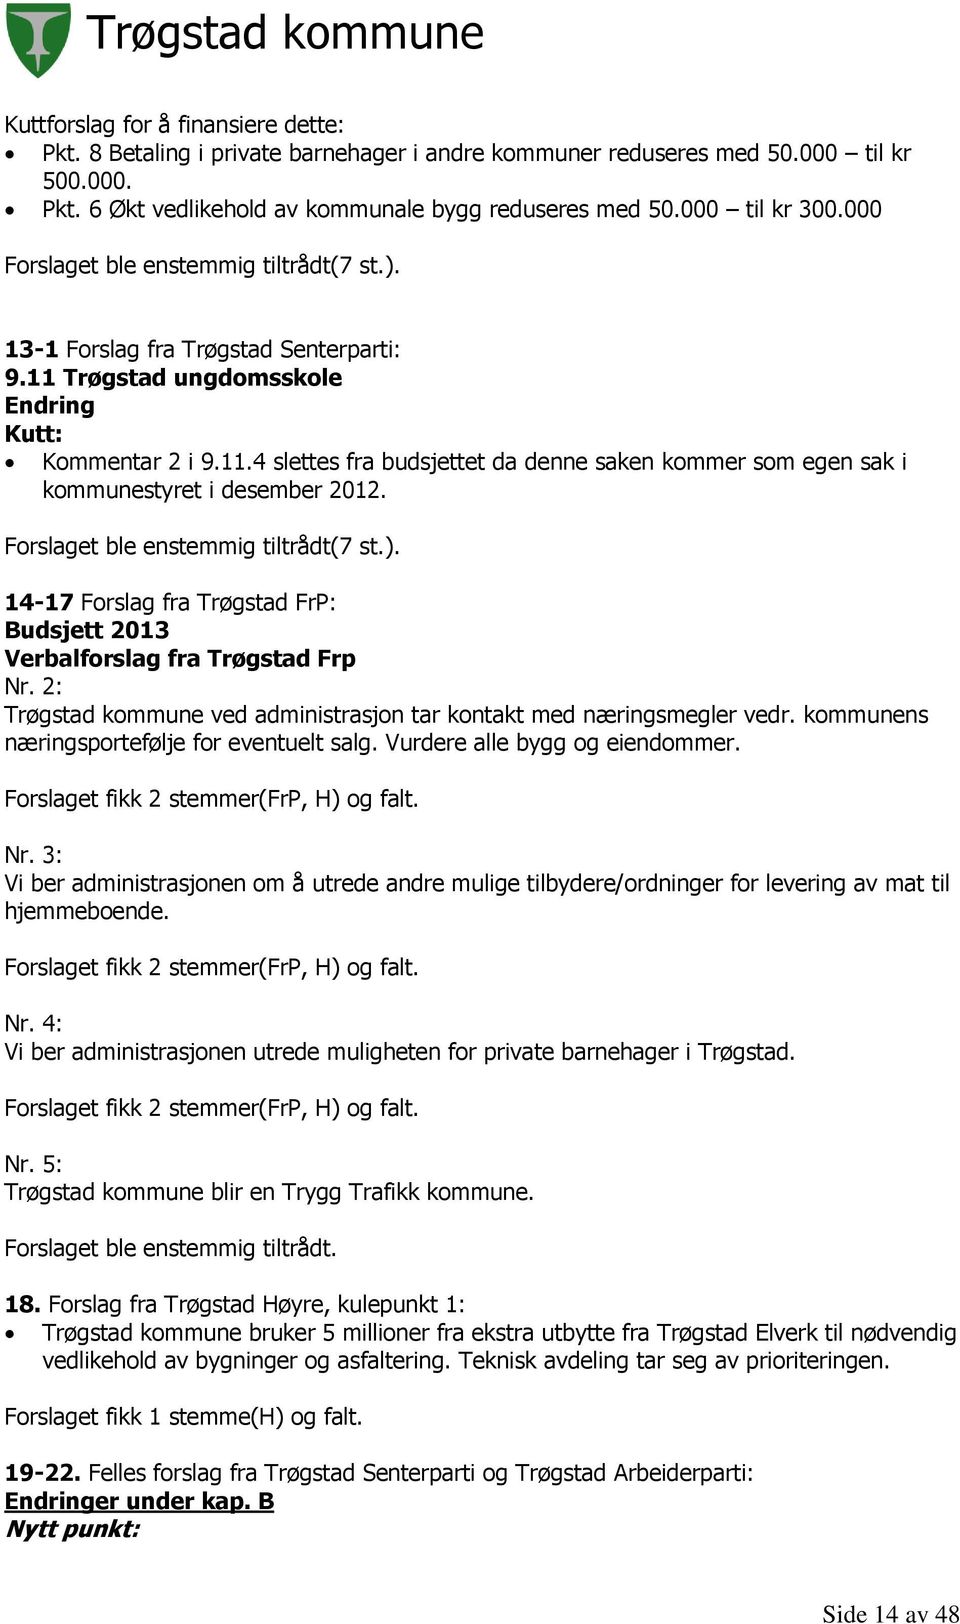 Forslaget ble enstemmig tiltrådt(7 st.). 14-17 Forslag fra Trøgstad FrP: Budsjett 2013 Verbalforslag fra Trøgstad Frp Nr. 2: Trøgstad kommune ved administrasjon tar kontakt med næringsmegler vedr.